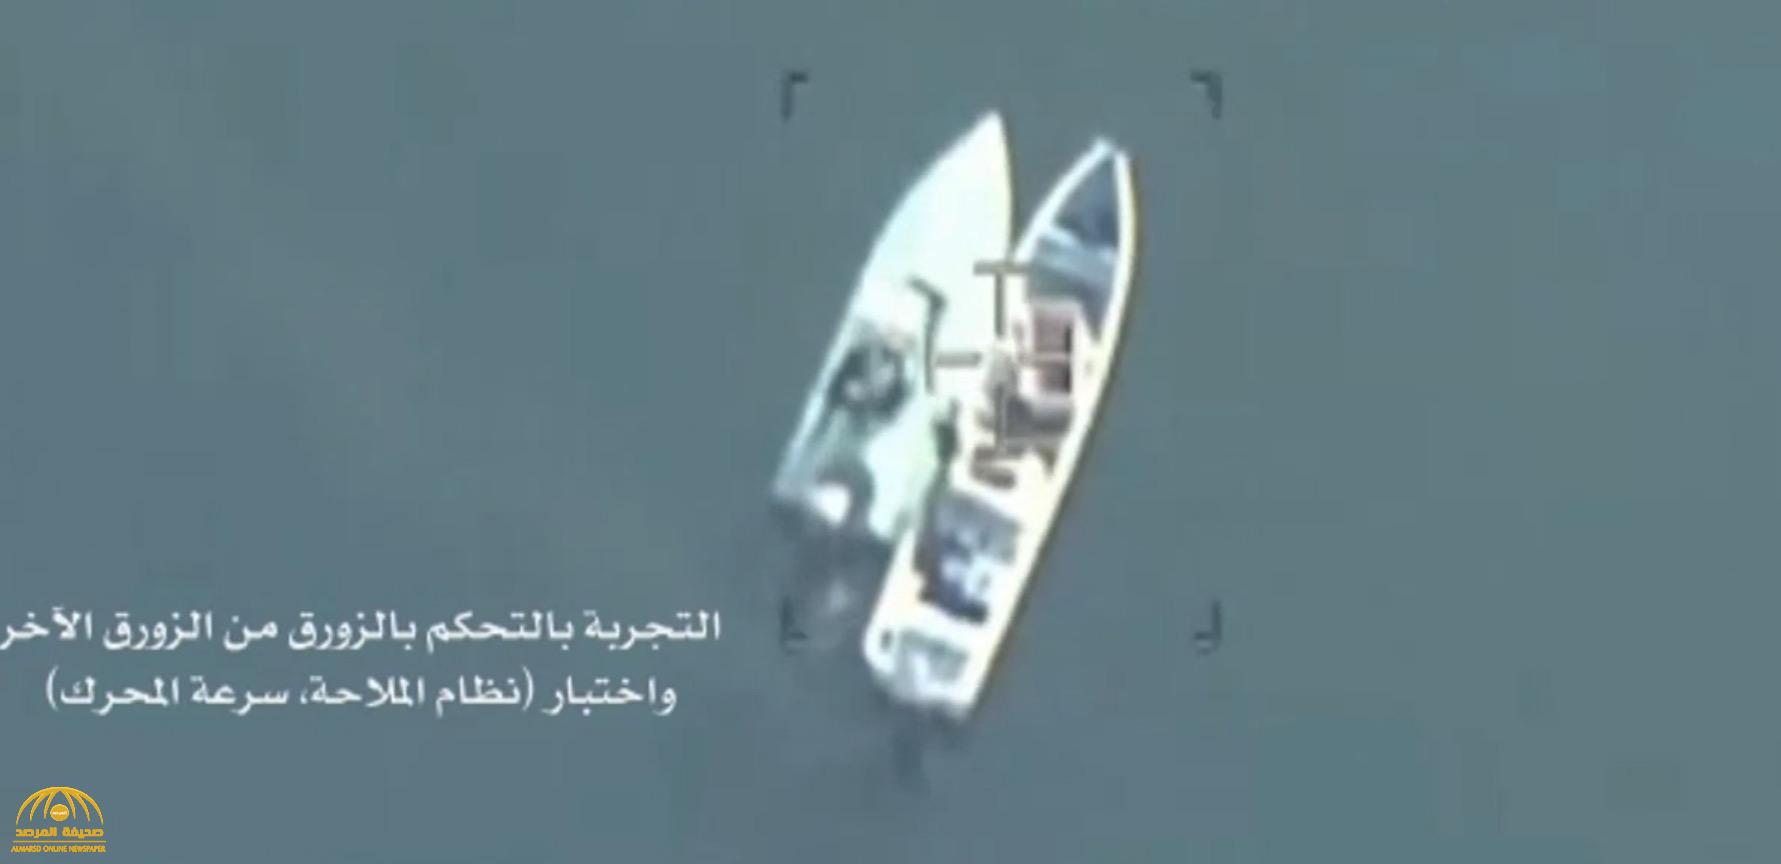 شاهد: أول فيديو يُظهر "تفخيخ" عناصر حوثية للقوارب لتهديد الملاحة